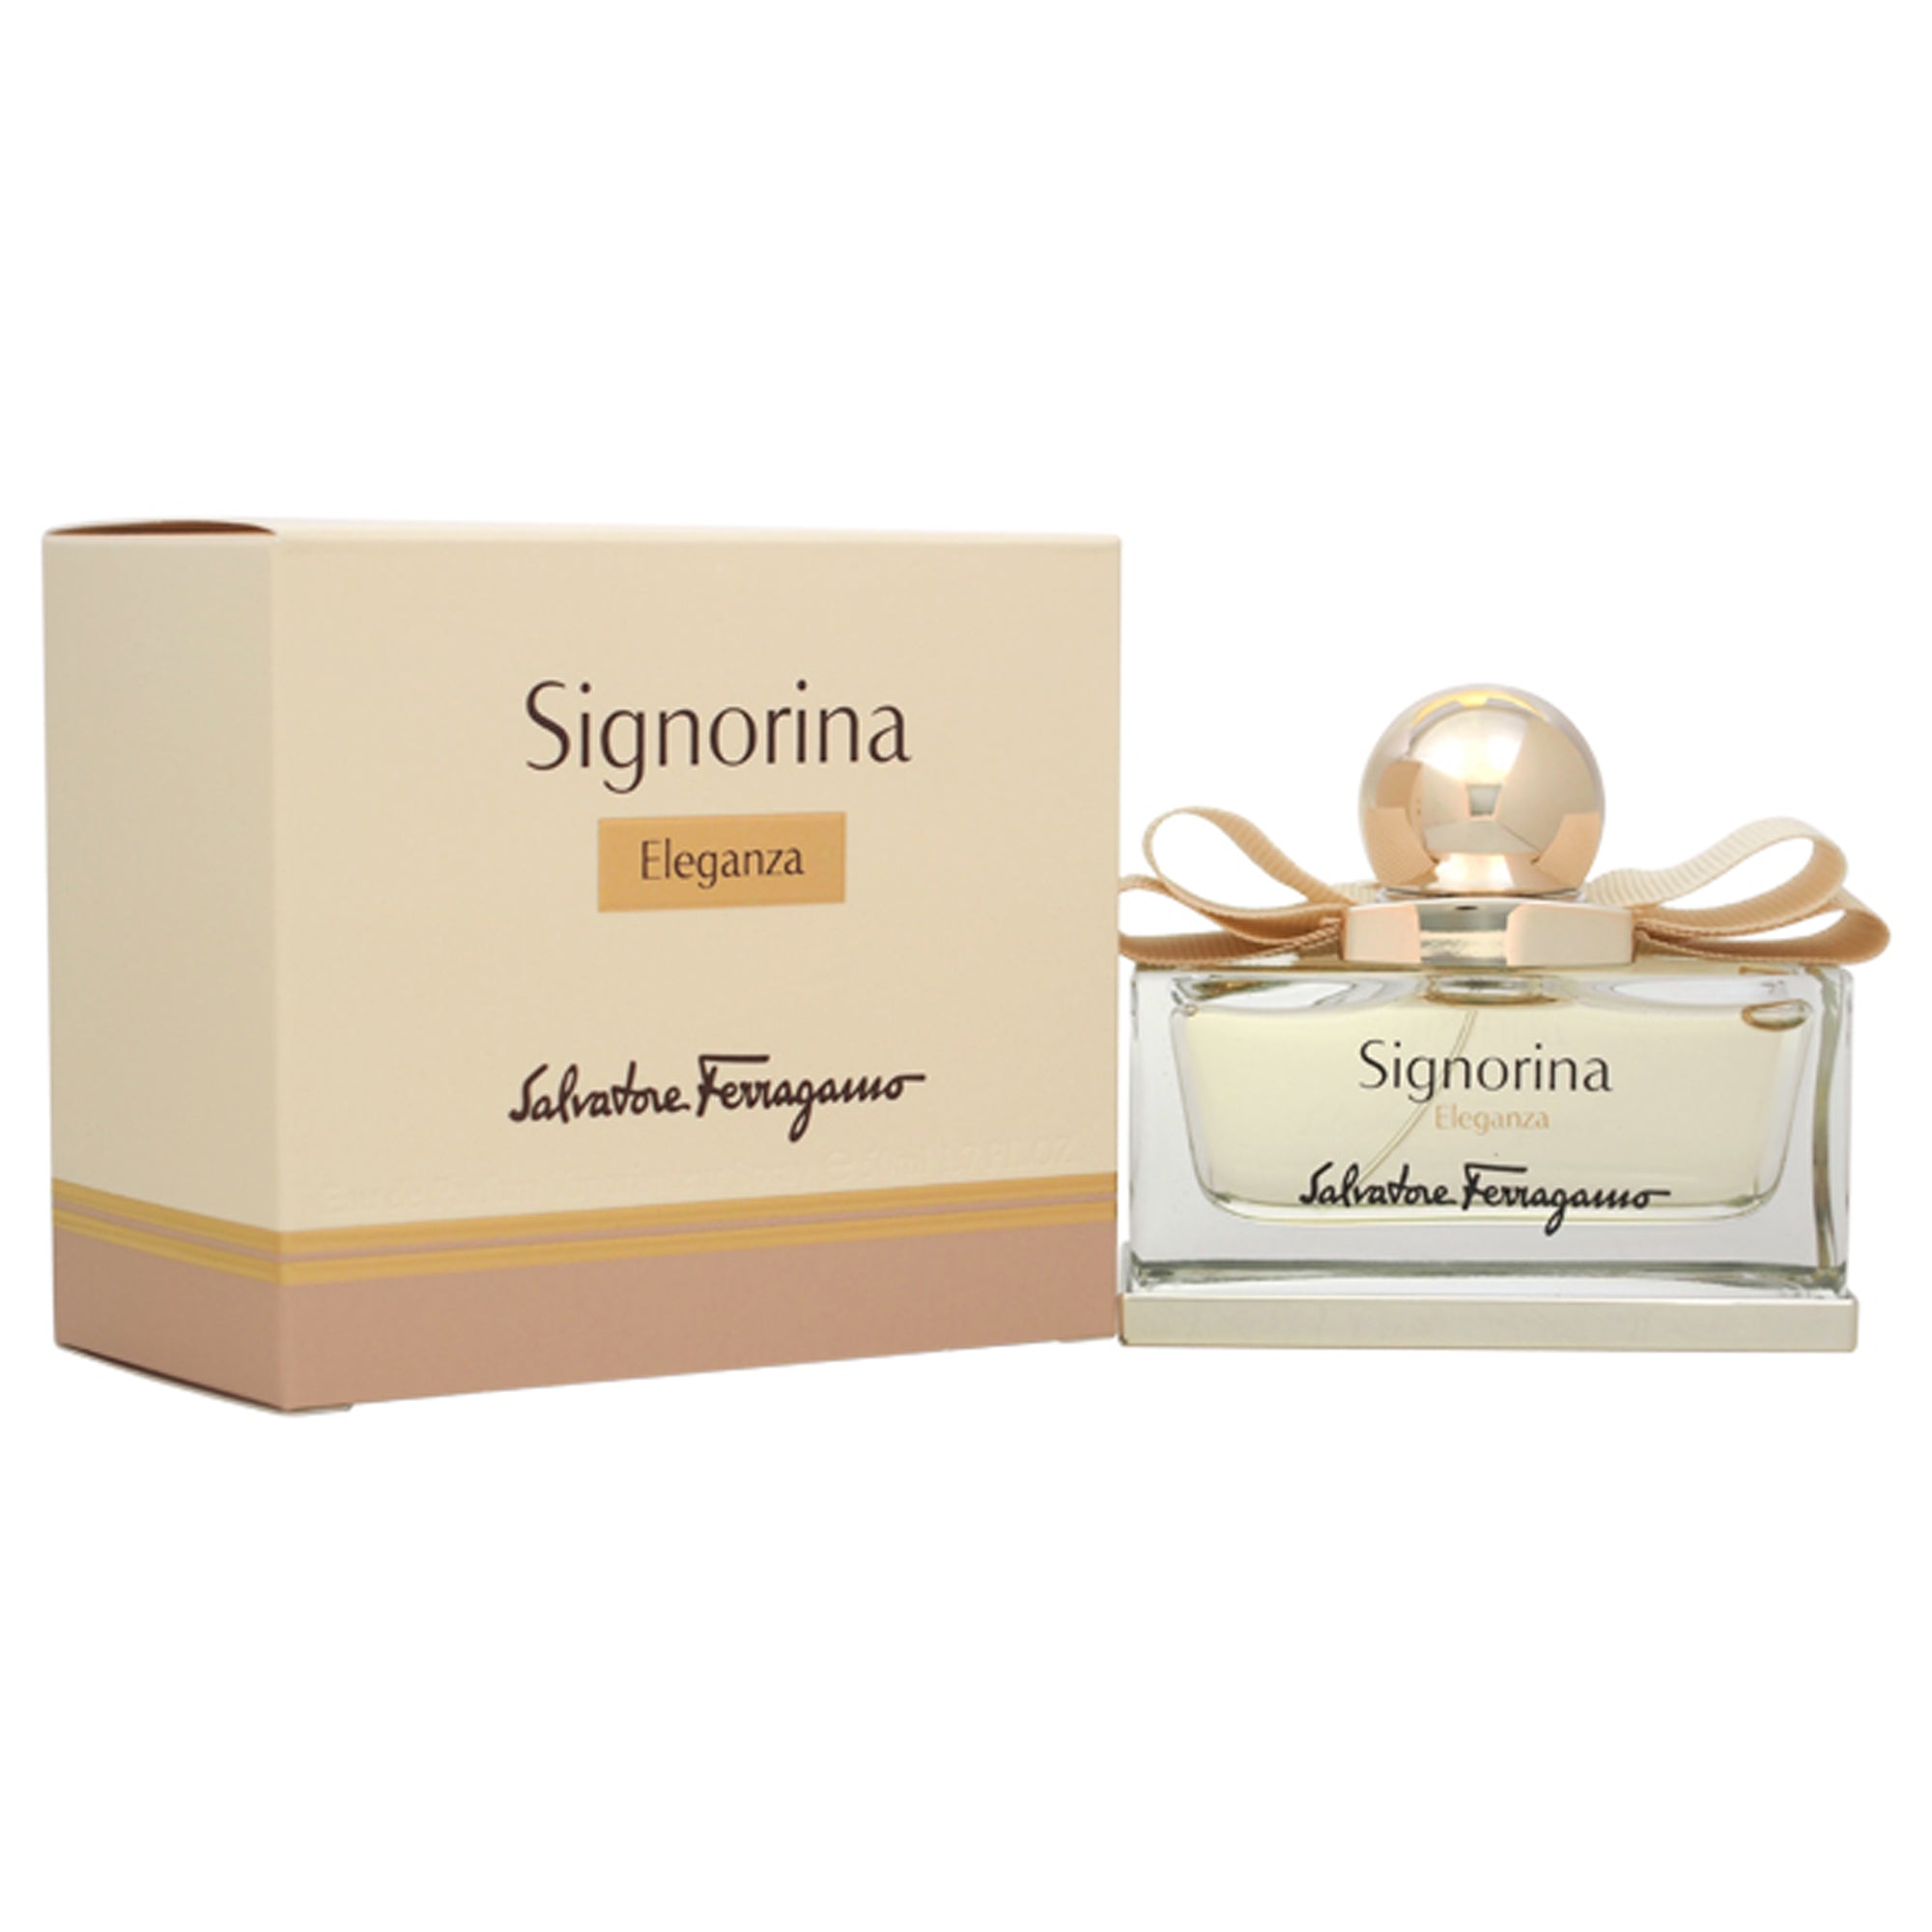 Signorina Eleganza by Salvatore Ferragamo for Women - 1.7 oz EDP Spray